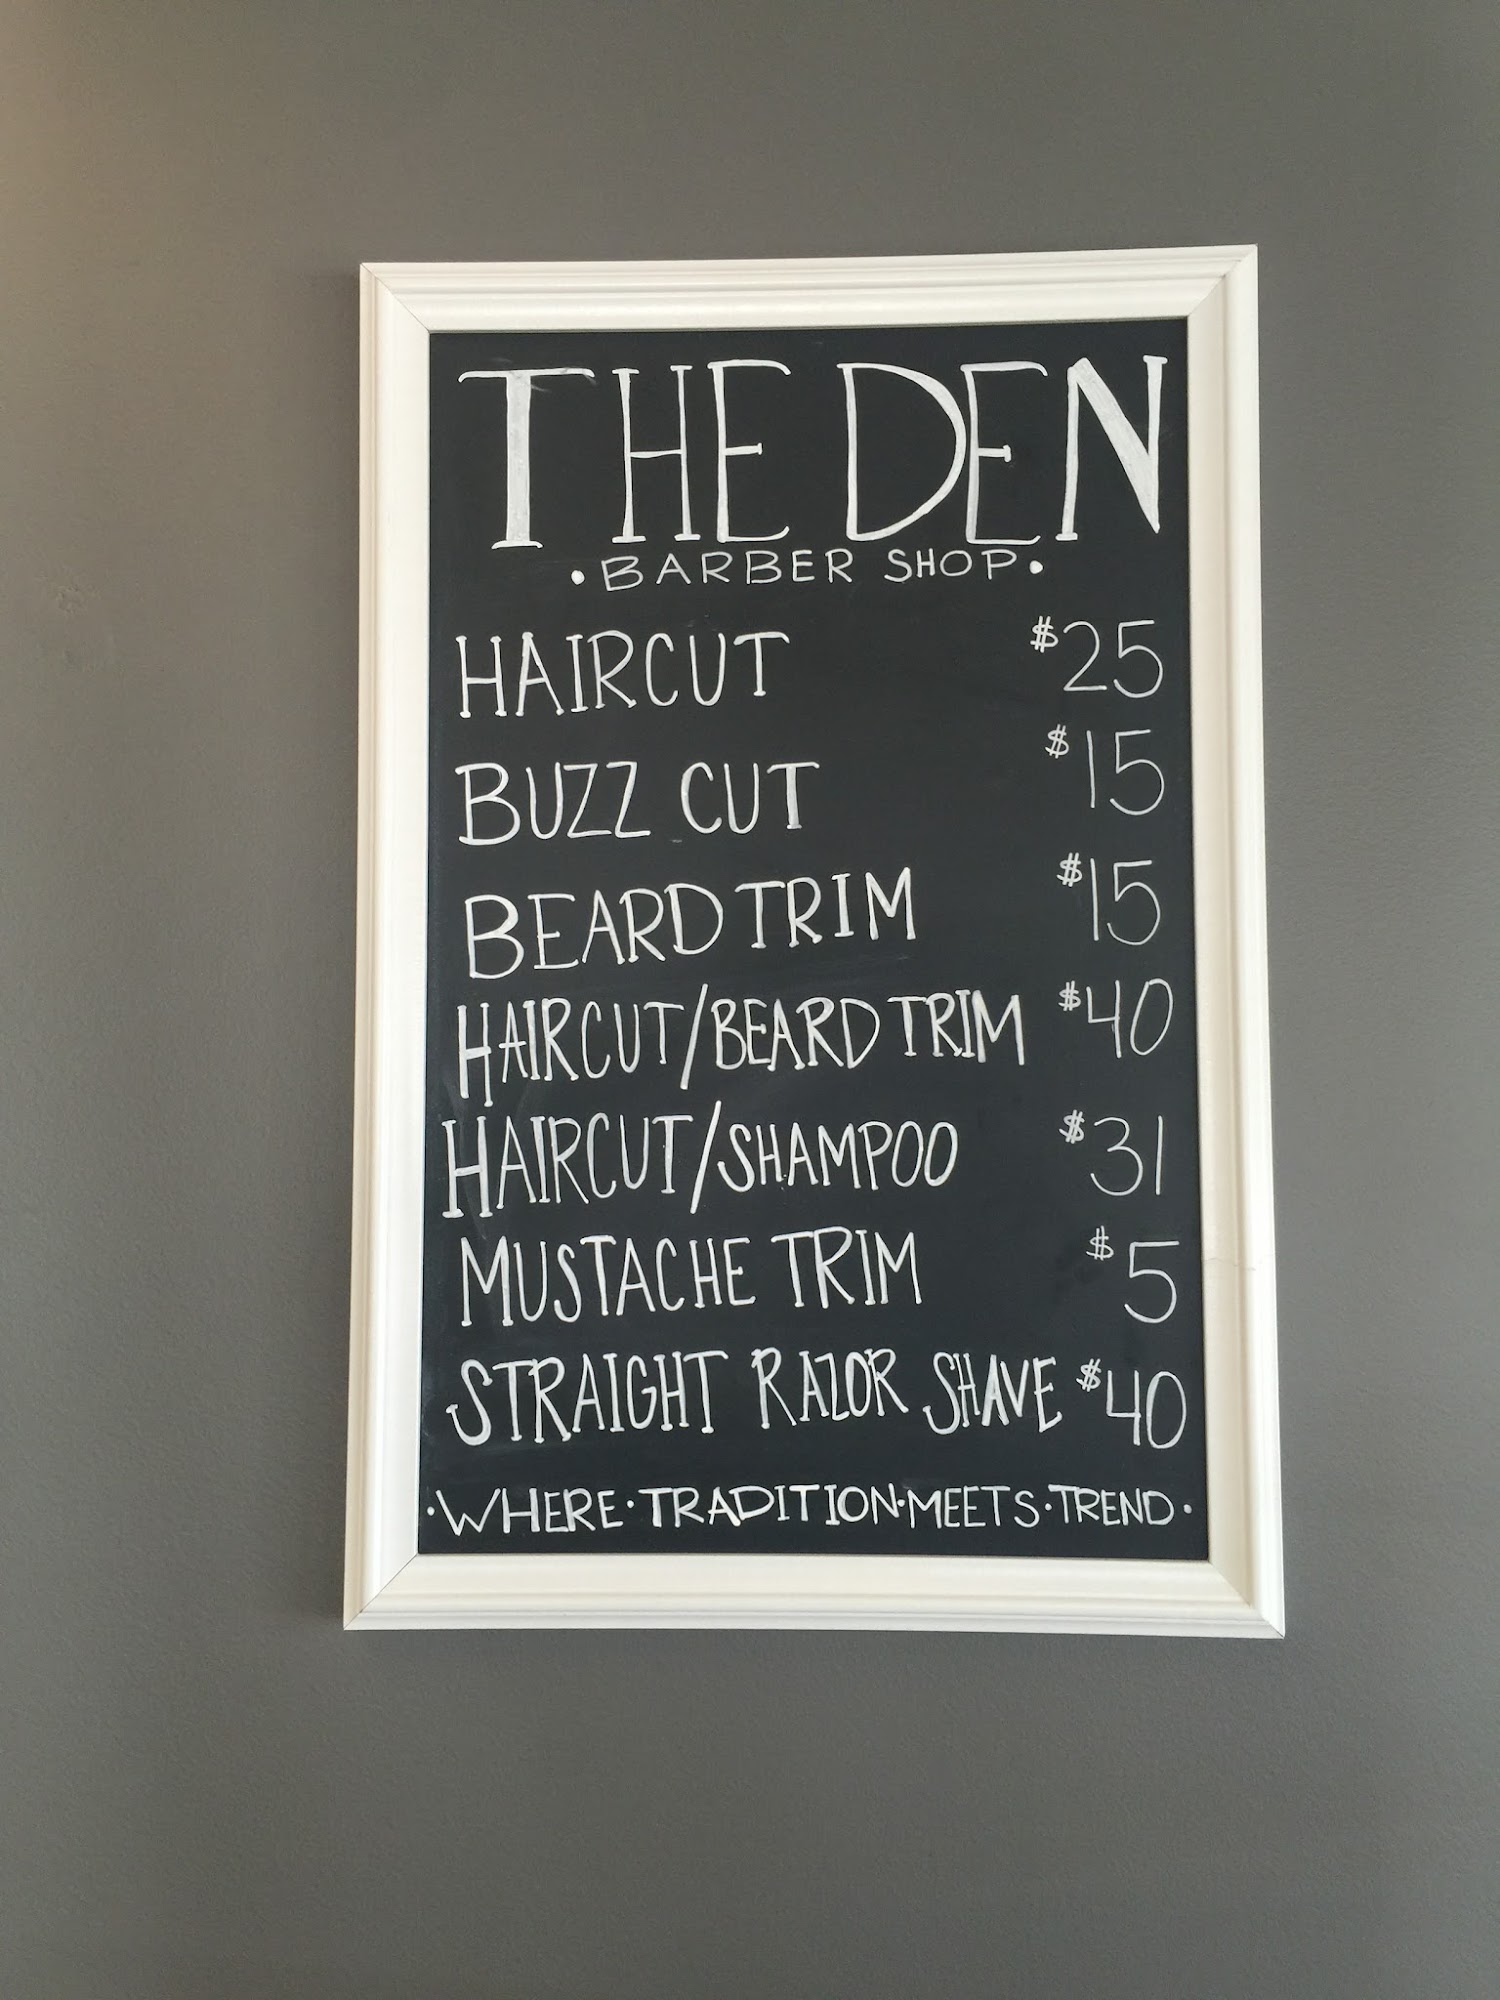 The Den Barber Shop